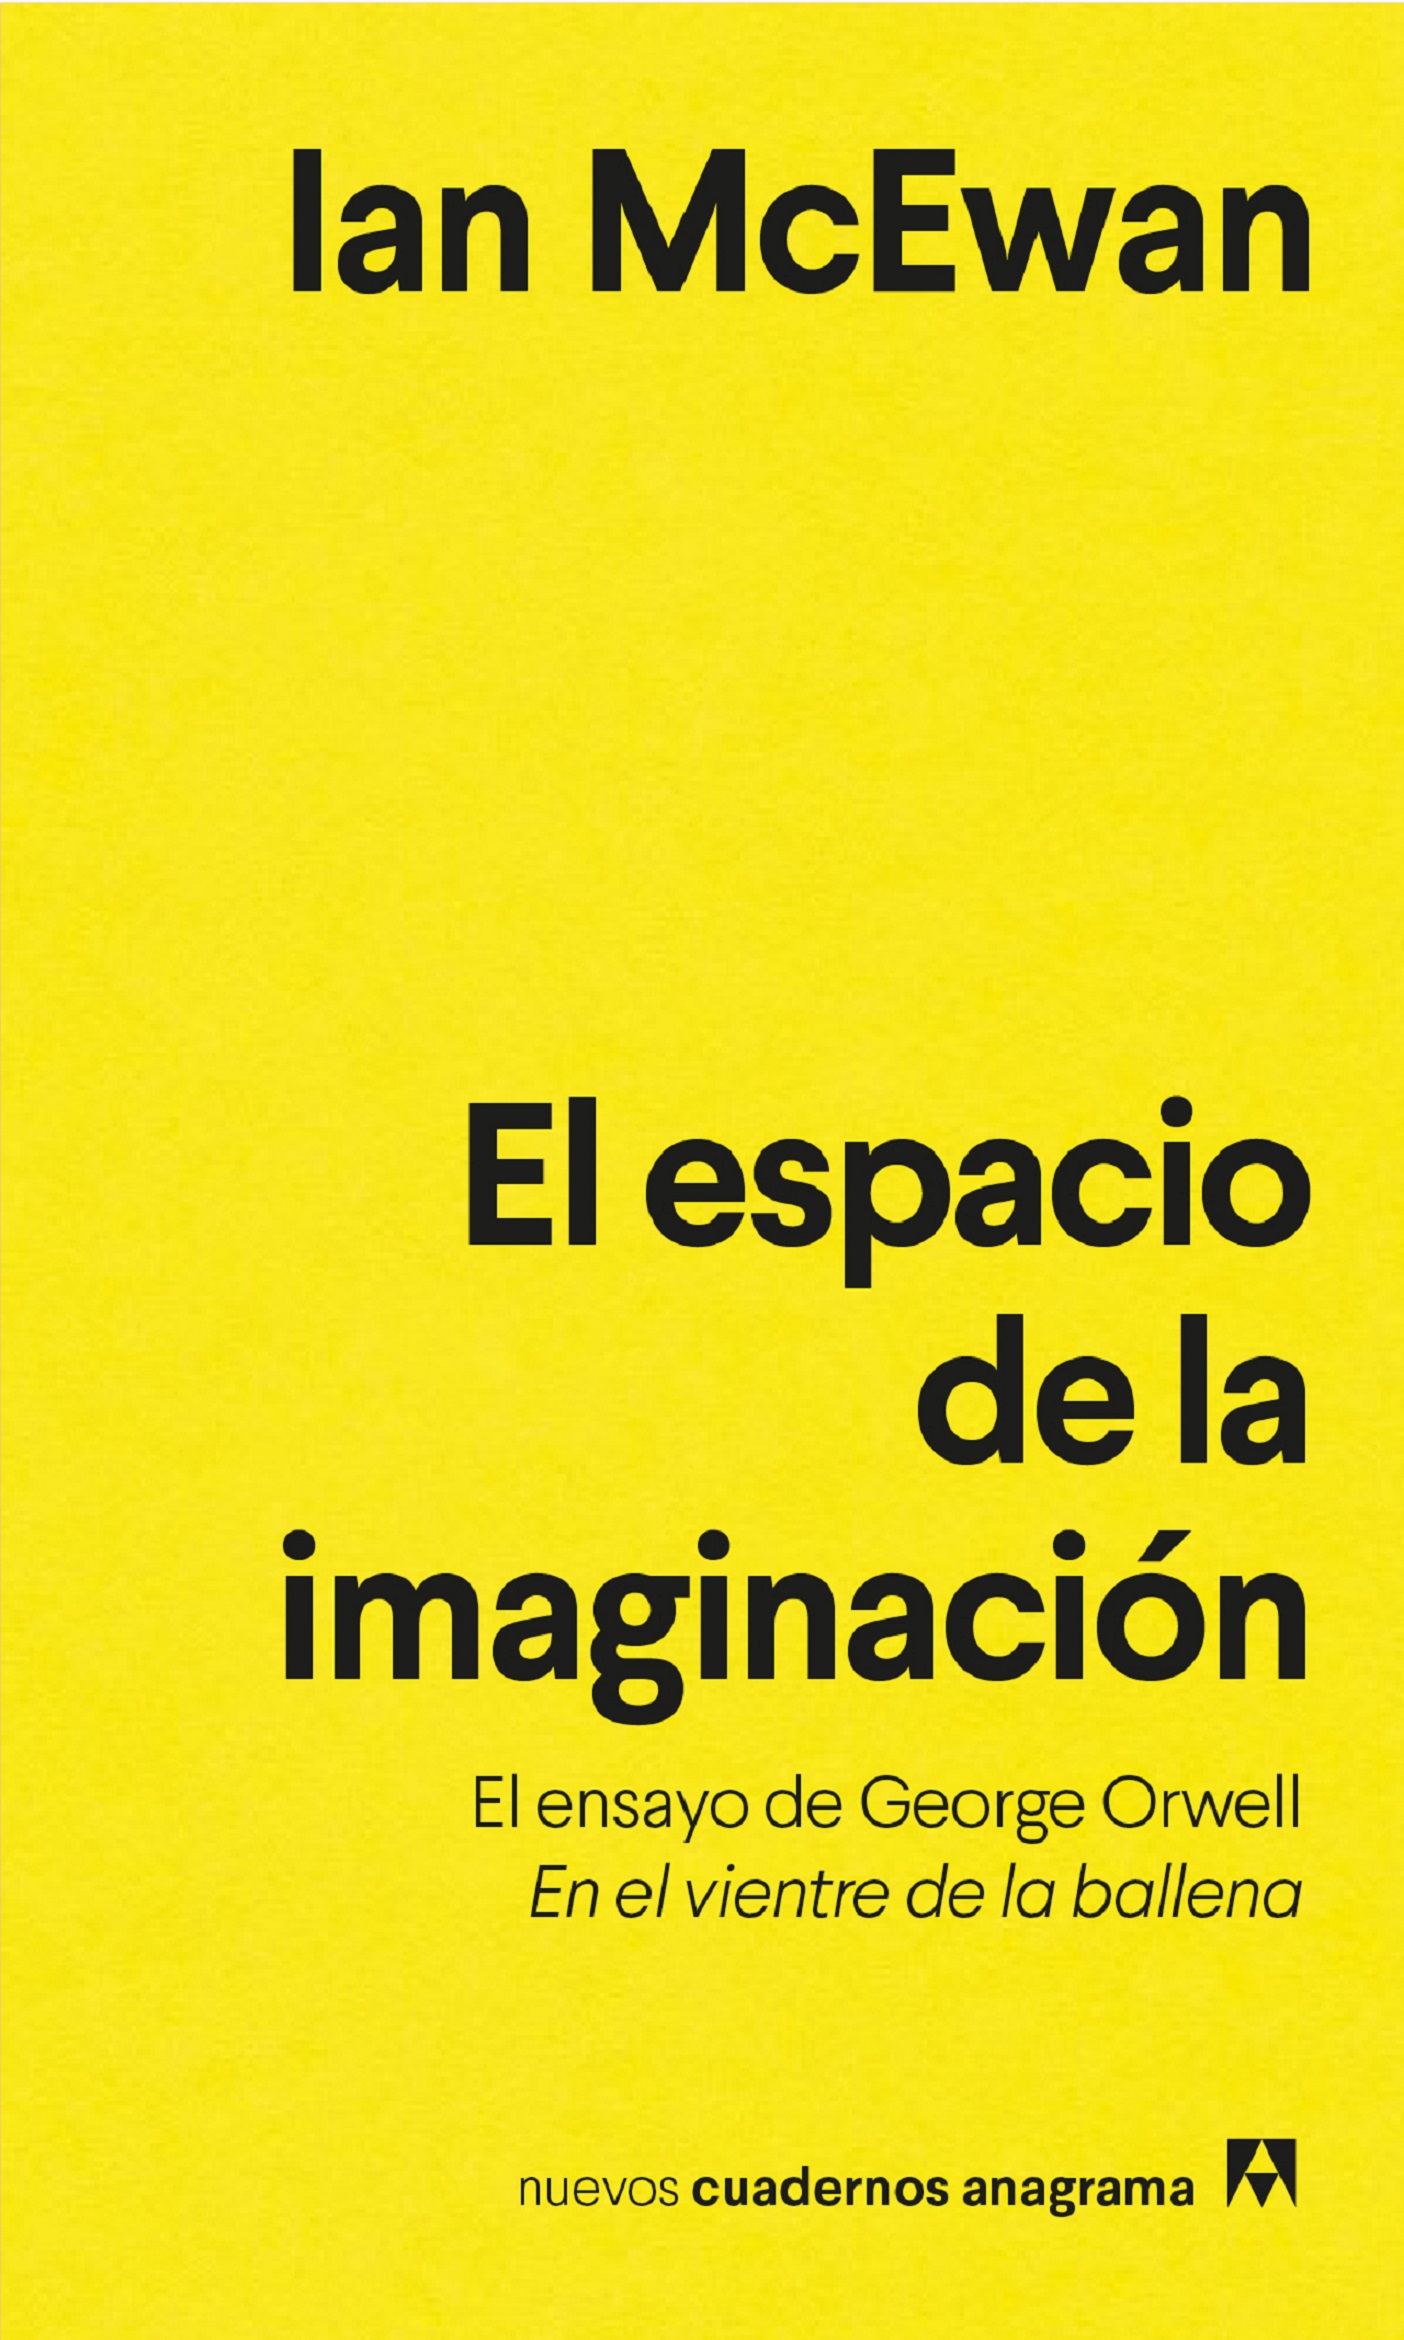 Imagen de portada del libro El espacio de la imaginación